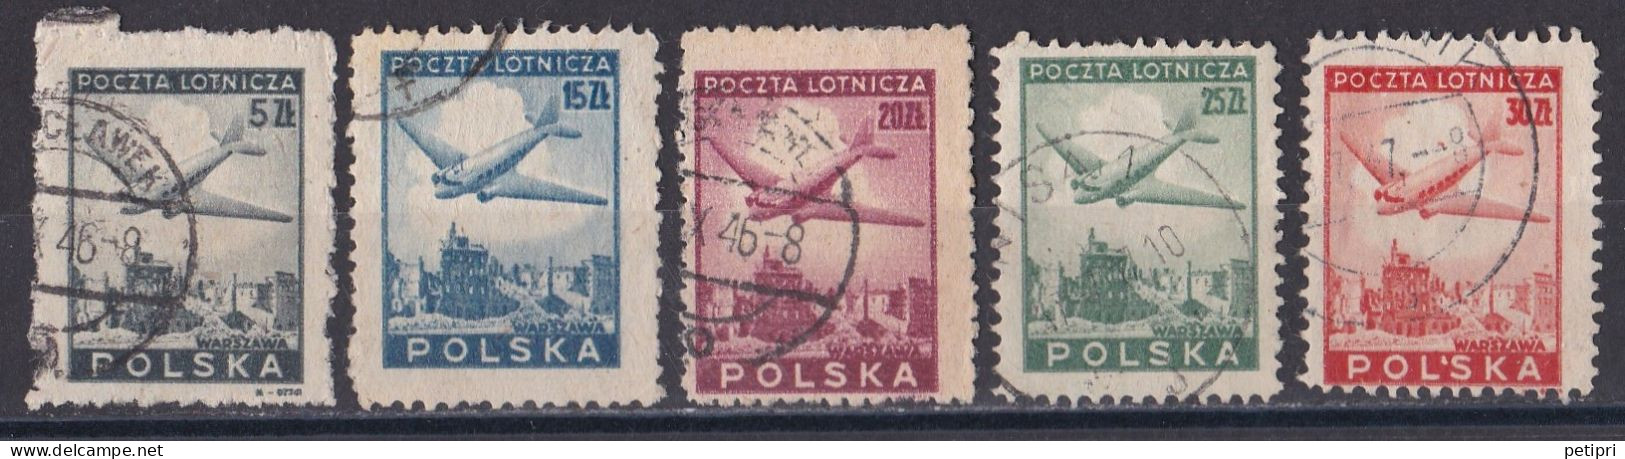 Pologne -  Poste Aérienne  Y&T  N ° 10  12  13  14  15  Oblitérés - Gebruikt